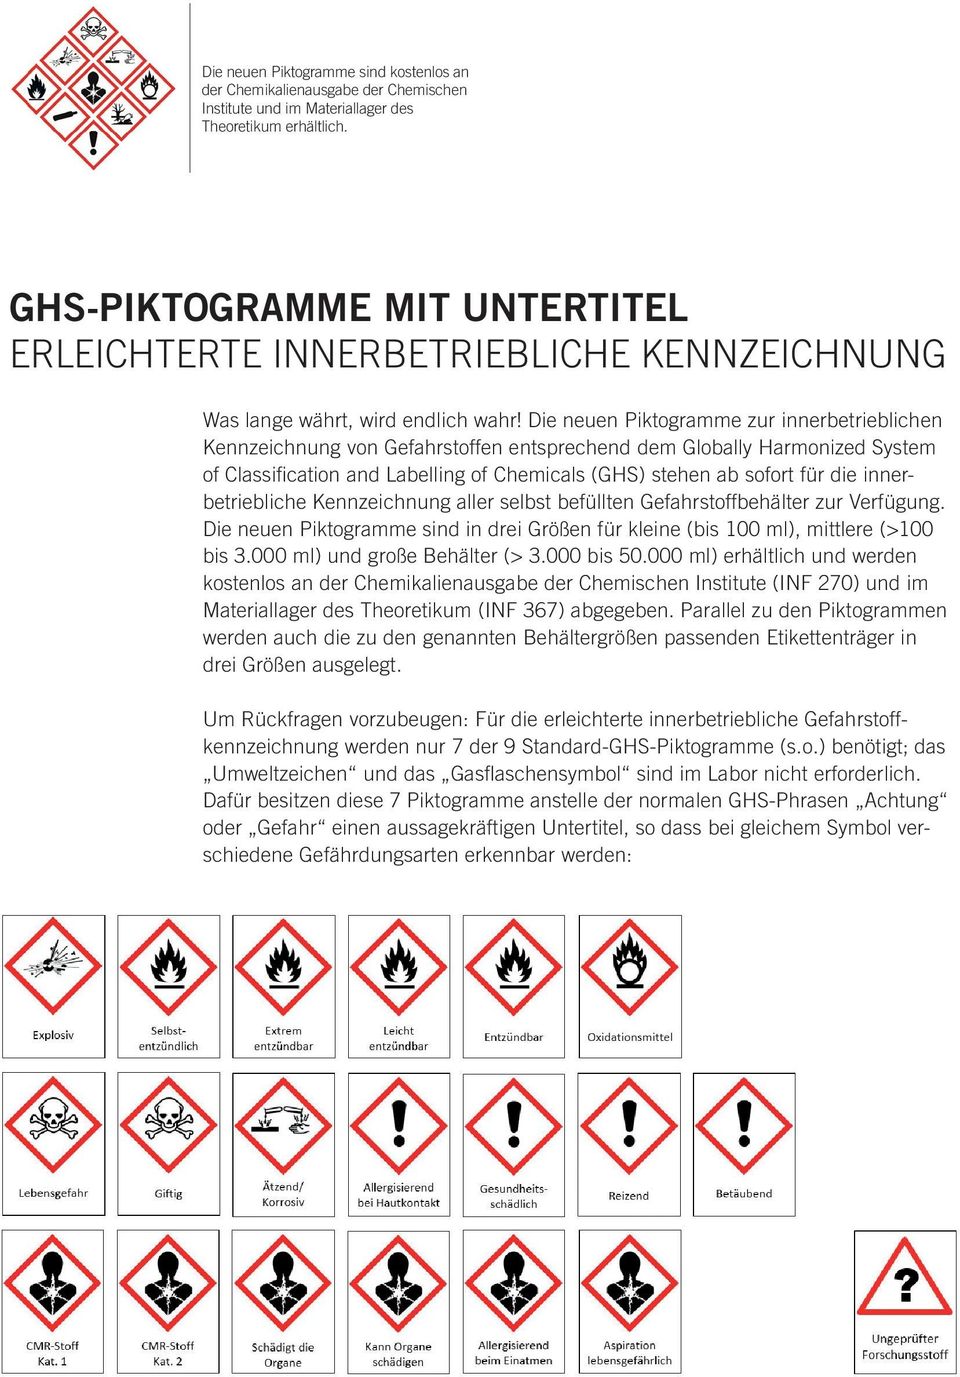 Die neuen Piktogramme zur innerbetrieblichen Kennzeichnung von Gefahrstoffen entsprechend dem Globally Harmonized System of Classification and Labelling of Chemicals (GHS) stehen ab sofort für die